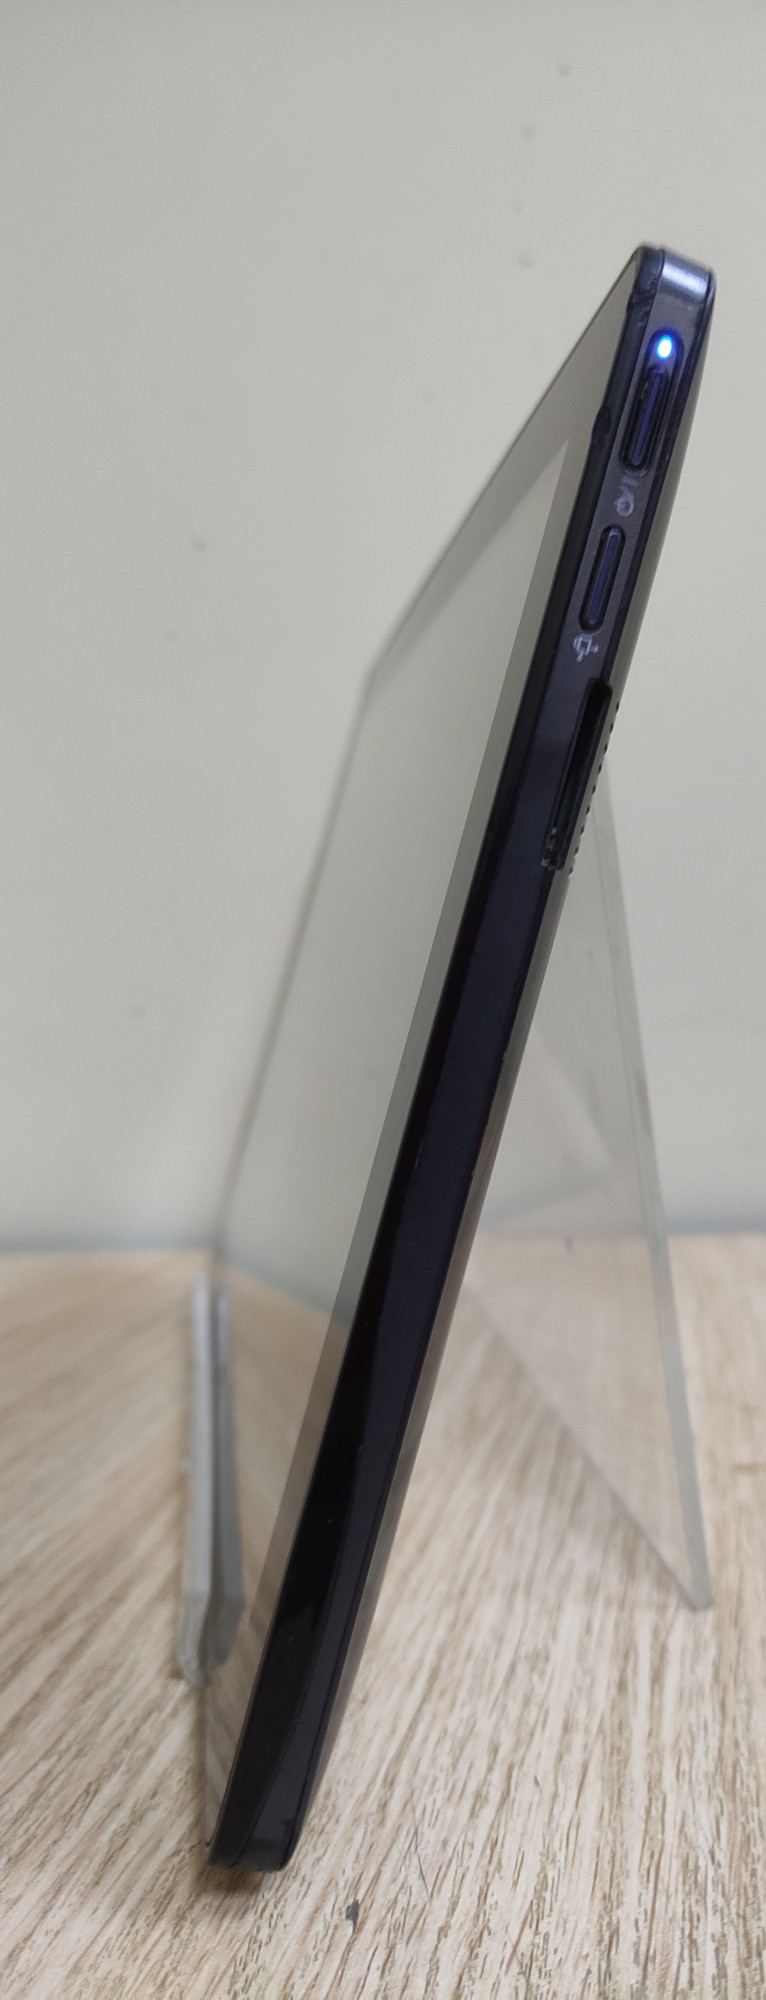 Планшет Samsung Slate PC Series 7 64GB 6